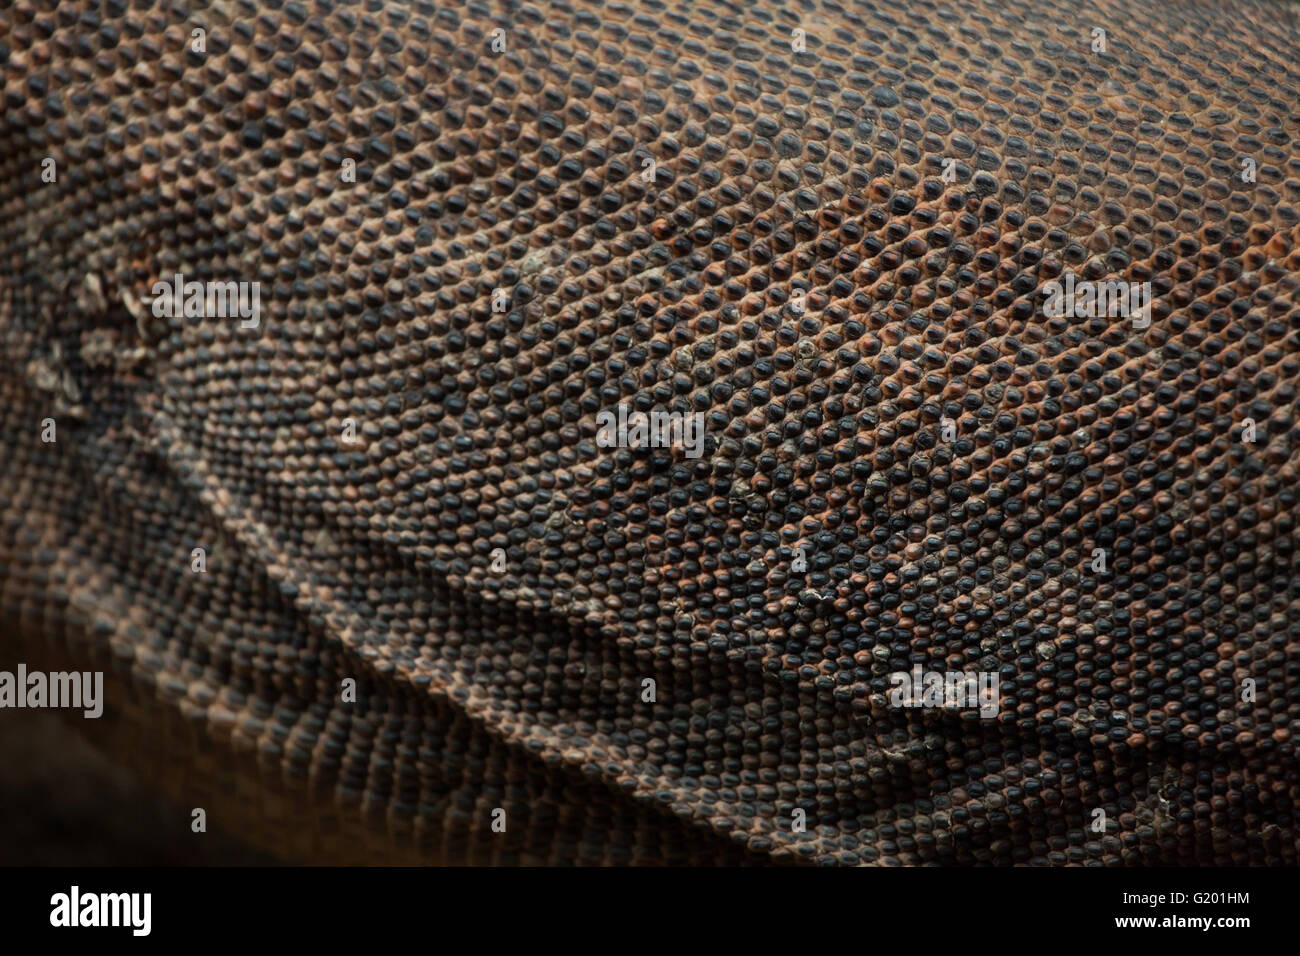 Komodo dragon (Varanus komodoensis). Skin texture. Stock Photo